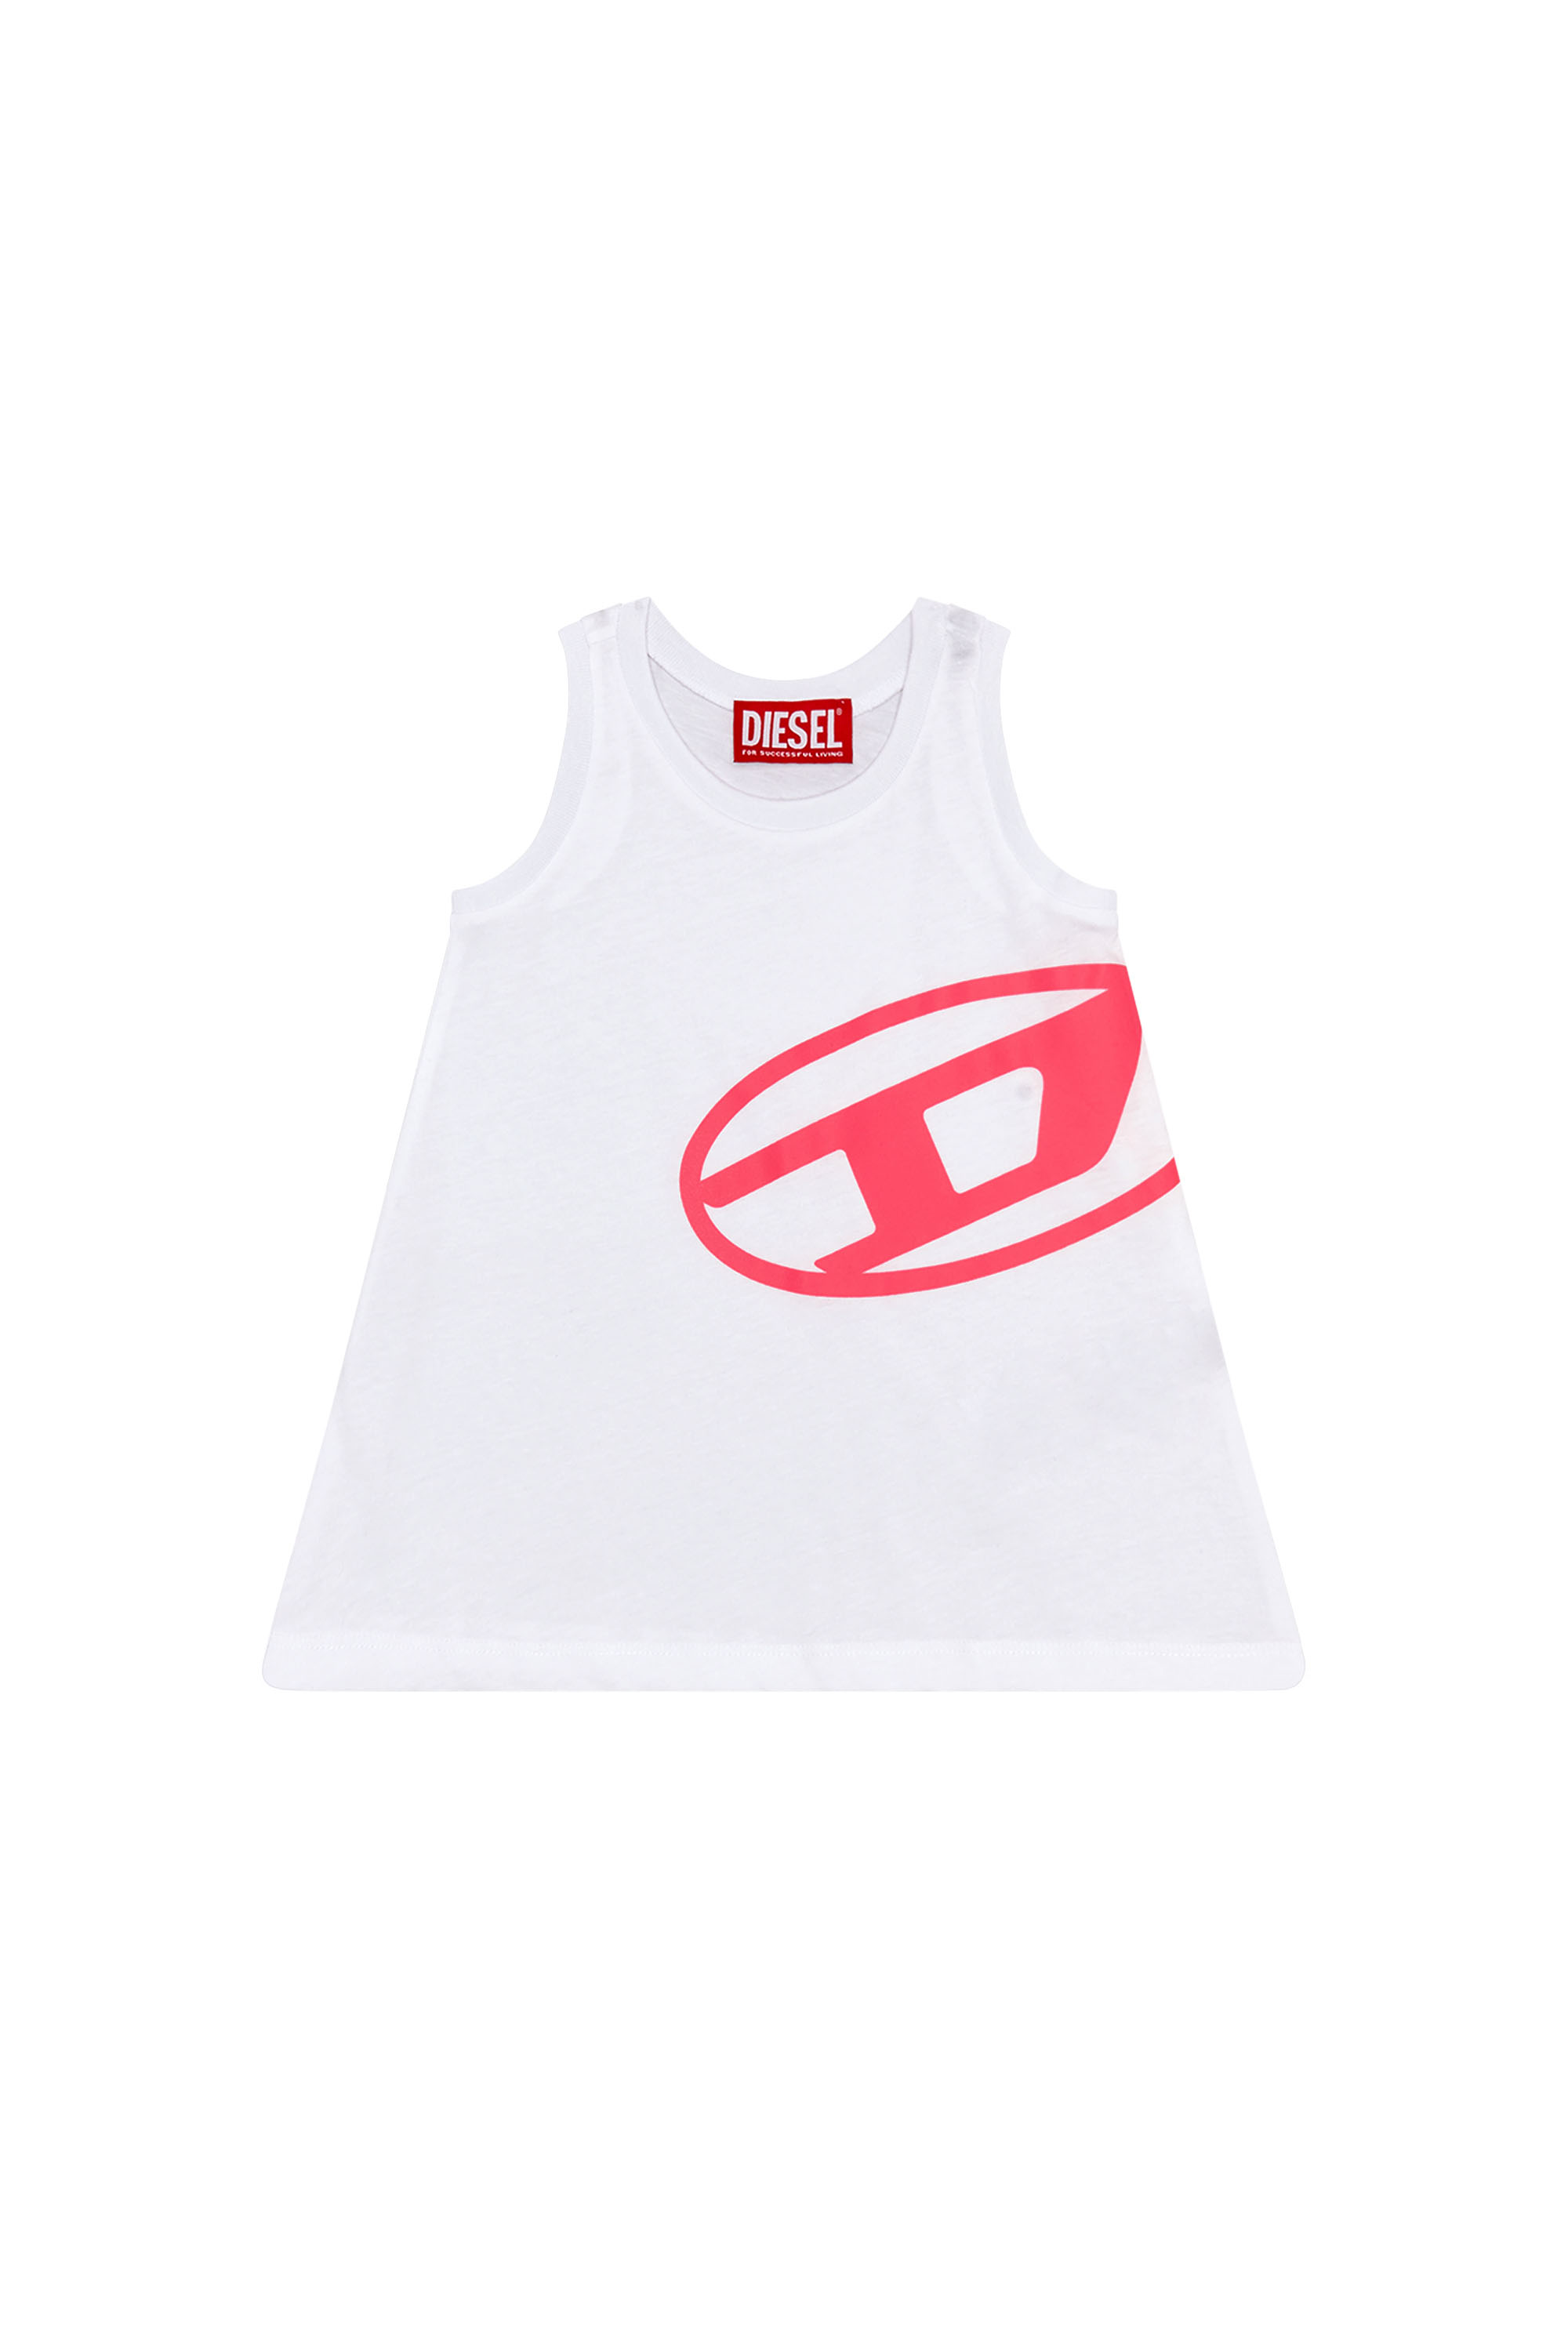 Diesel - MCURGIB, Damen Strand-Kleid mit Oval D-Logo in Weiss - Image 1